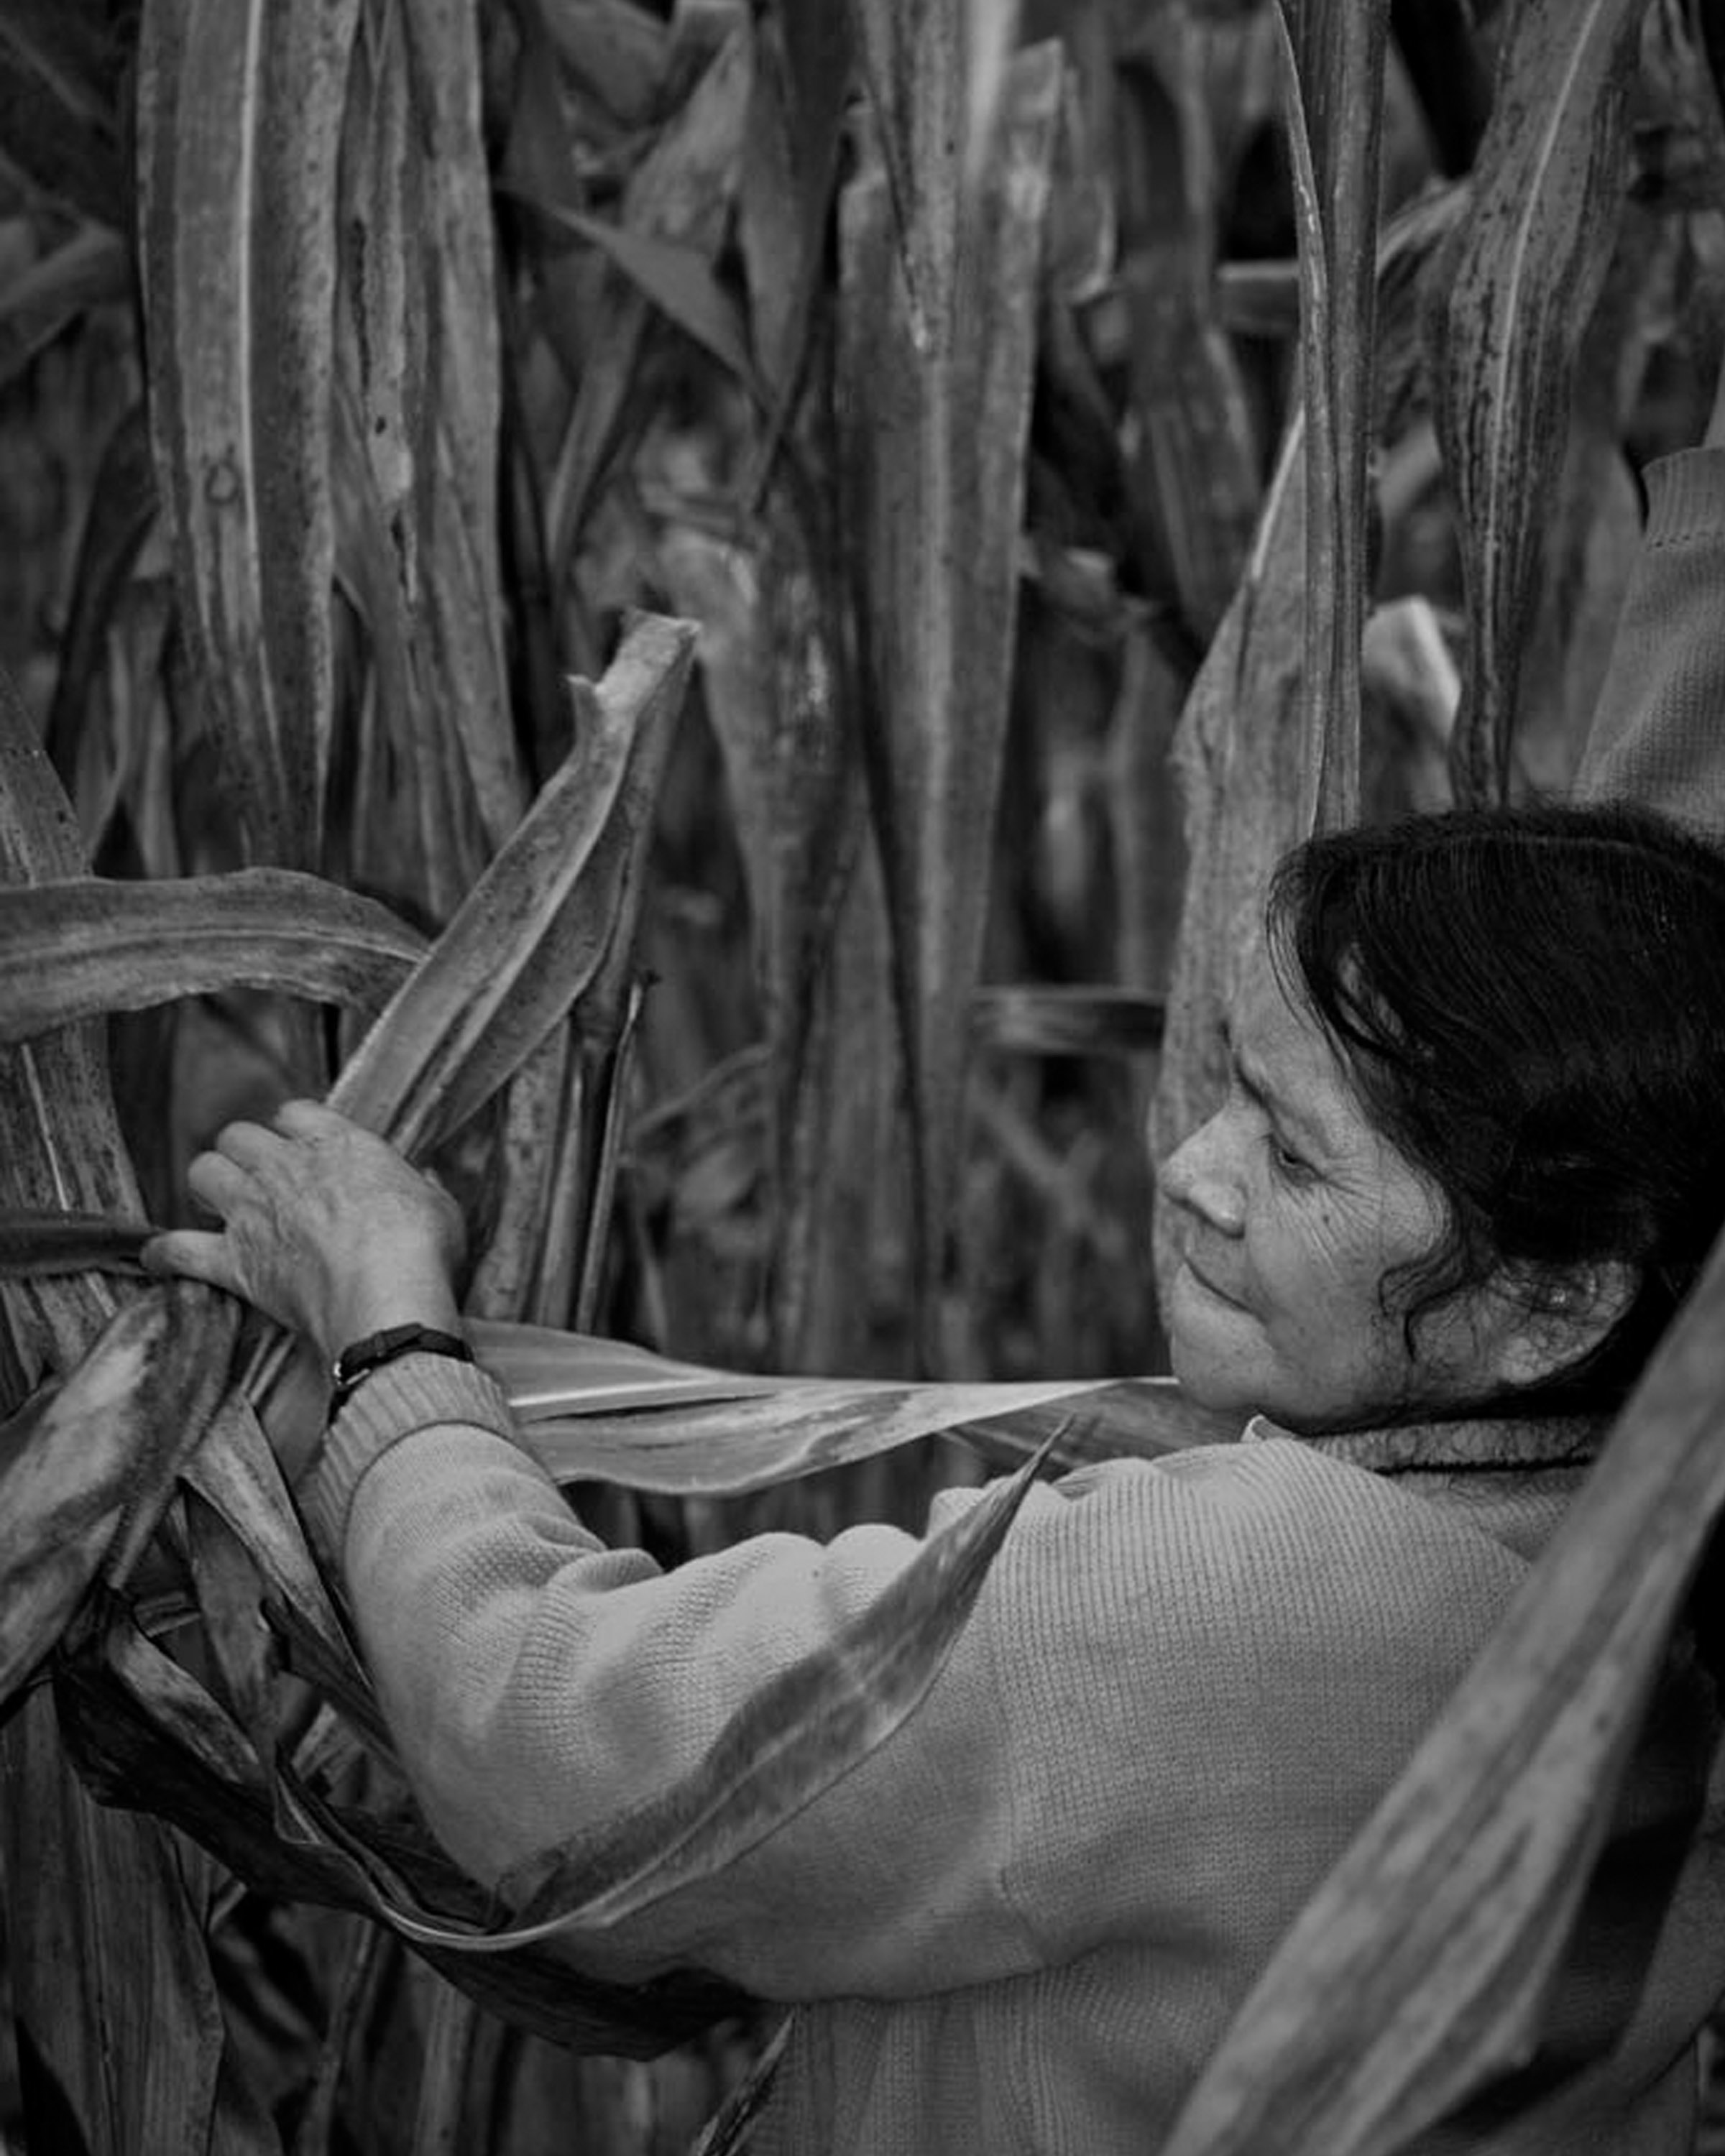 Revalorar la agricultura en México y dignificar a los agricultores